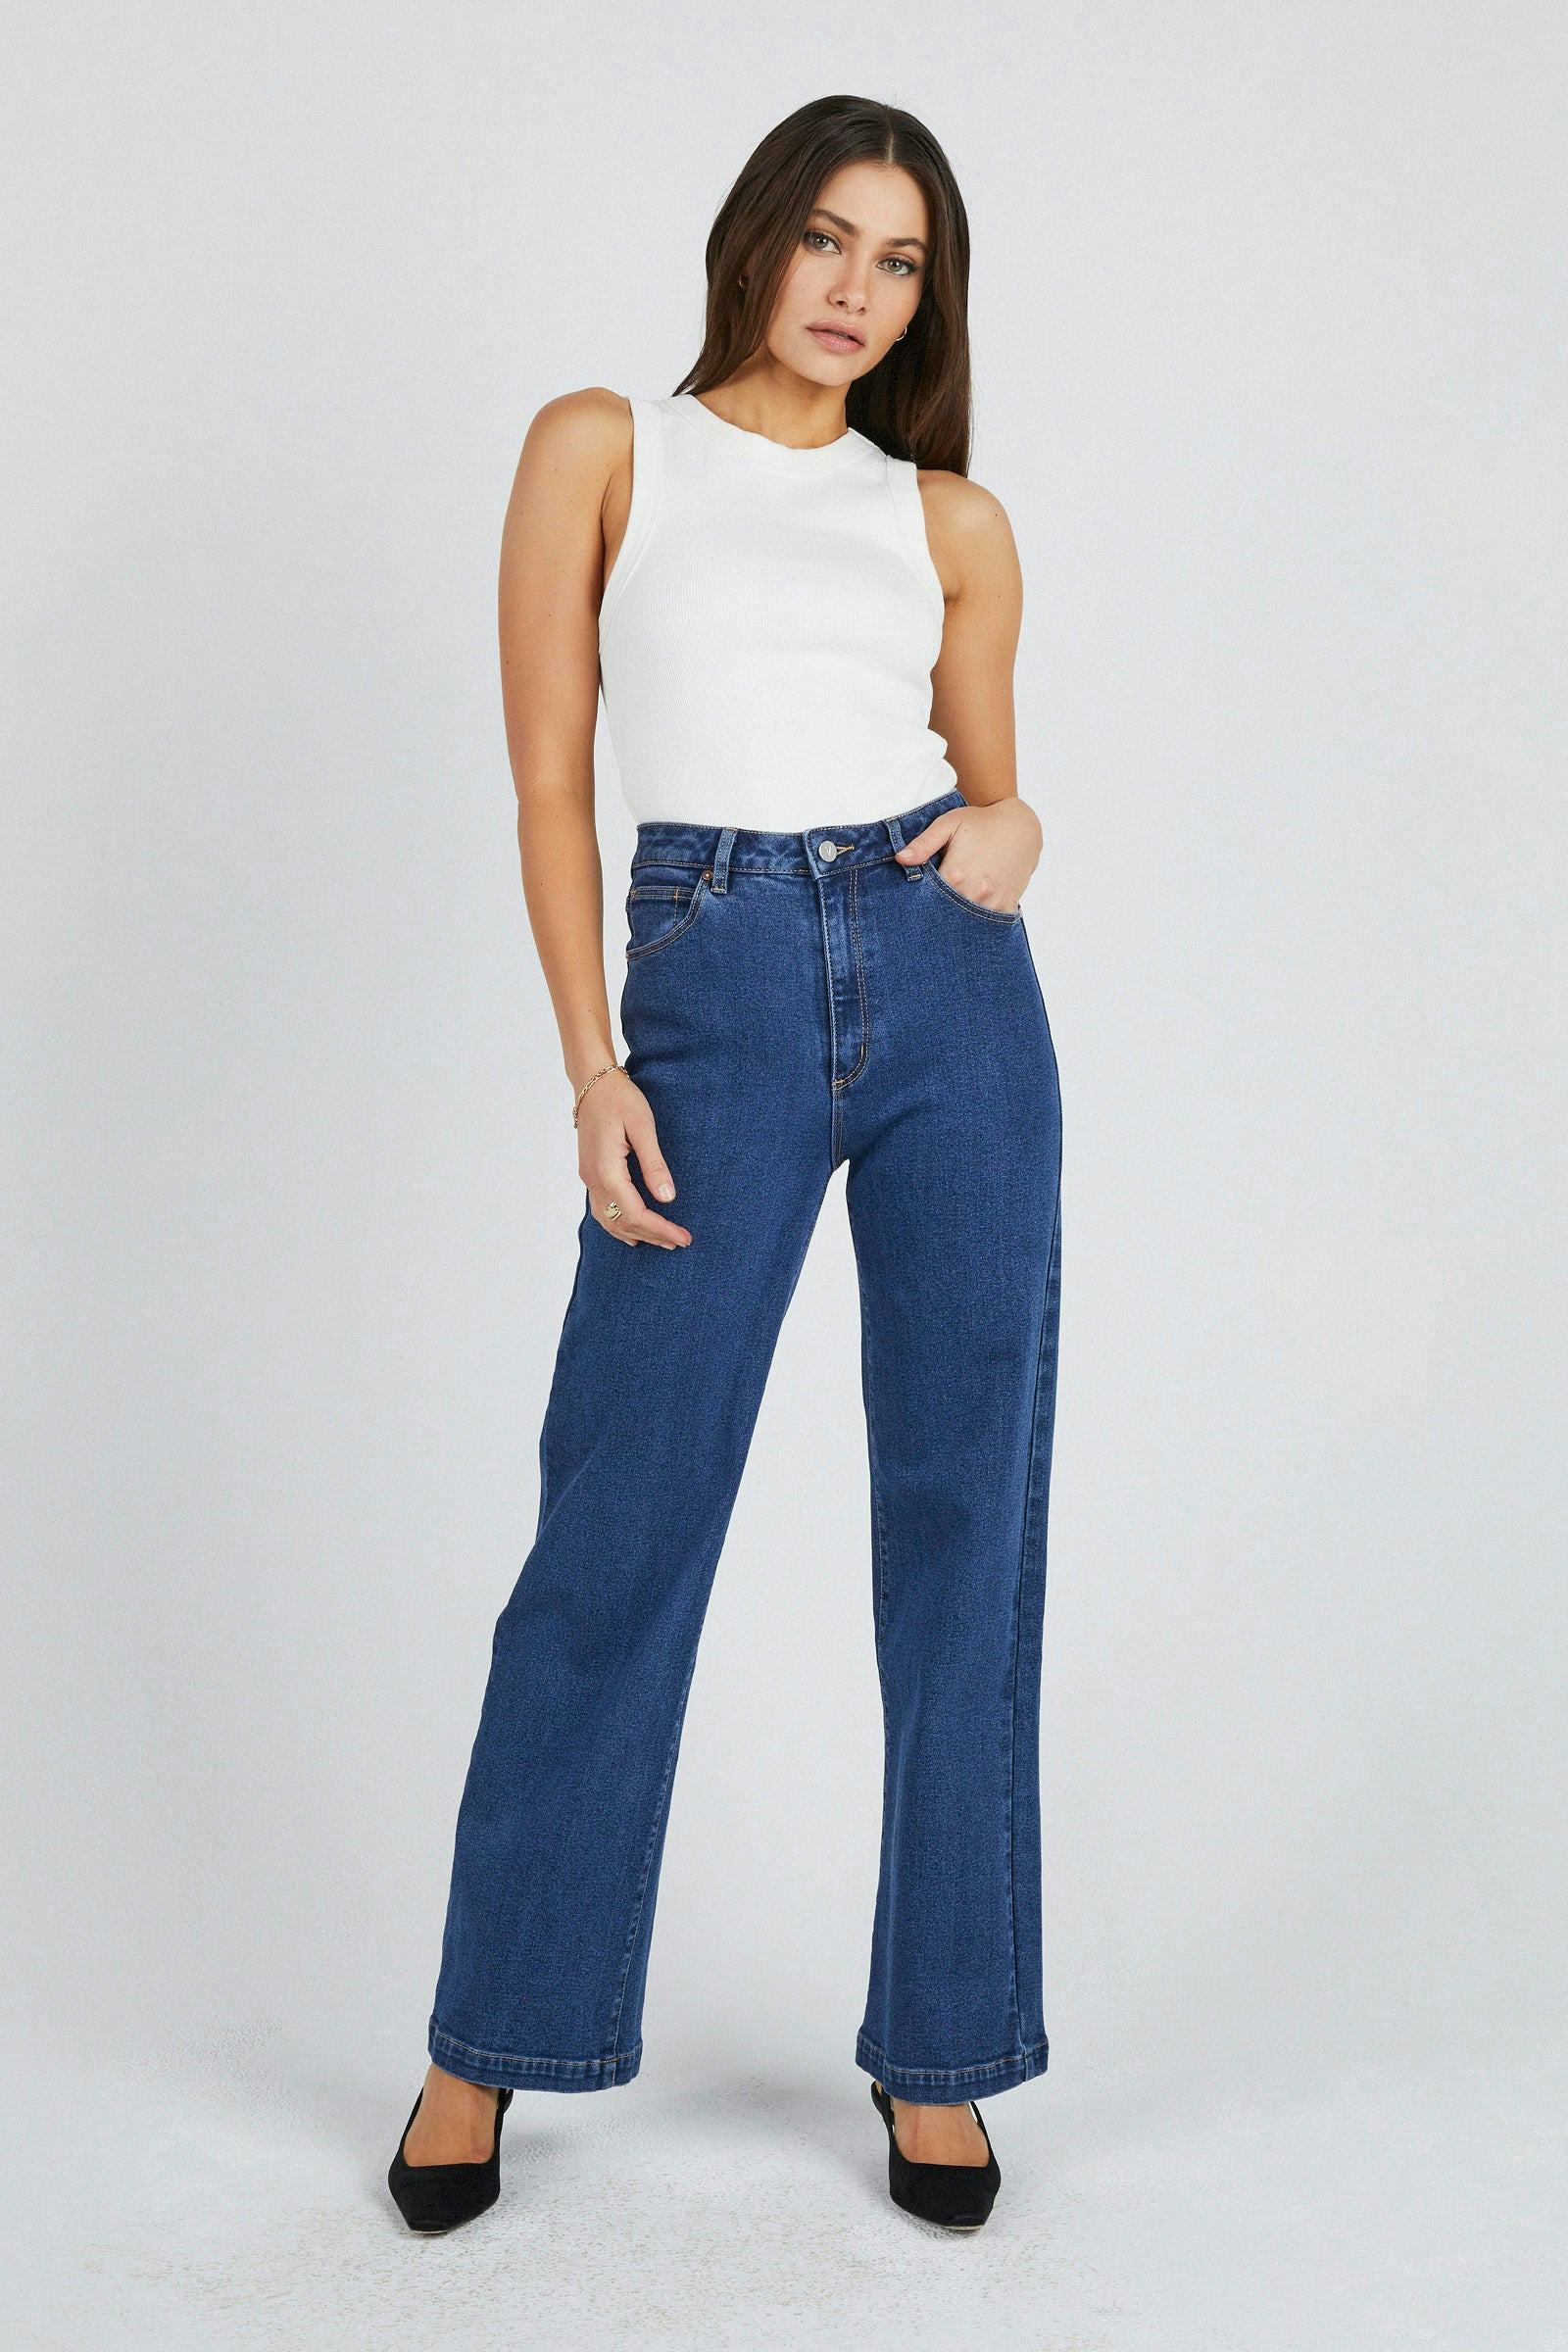 Buy Women's Stretch Jeans Online